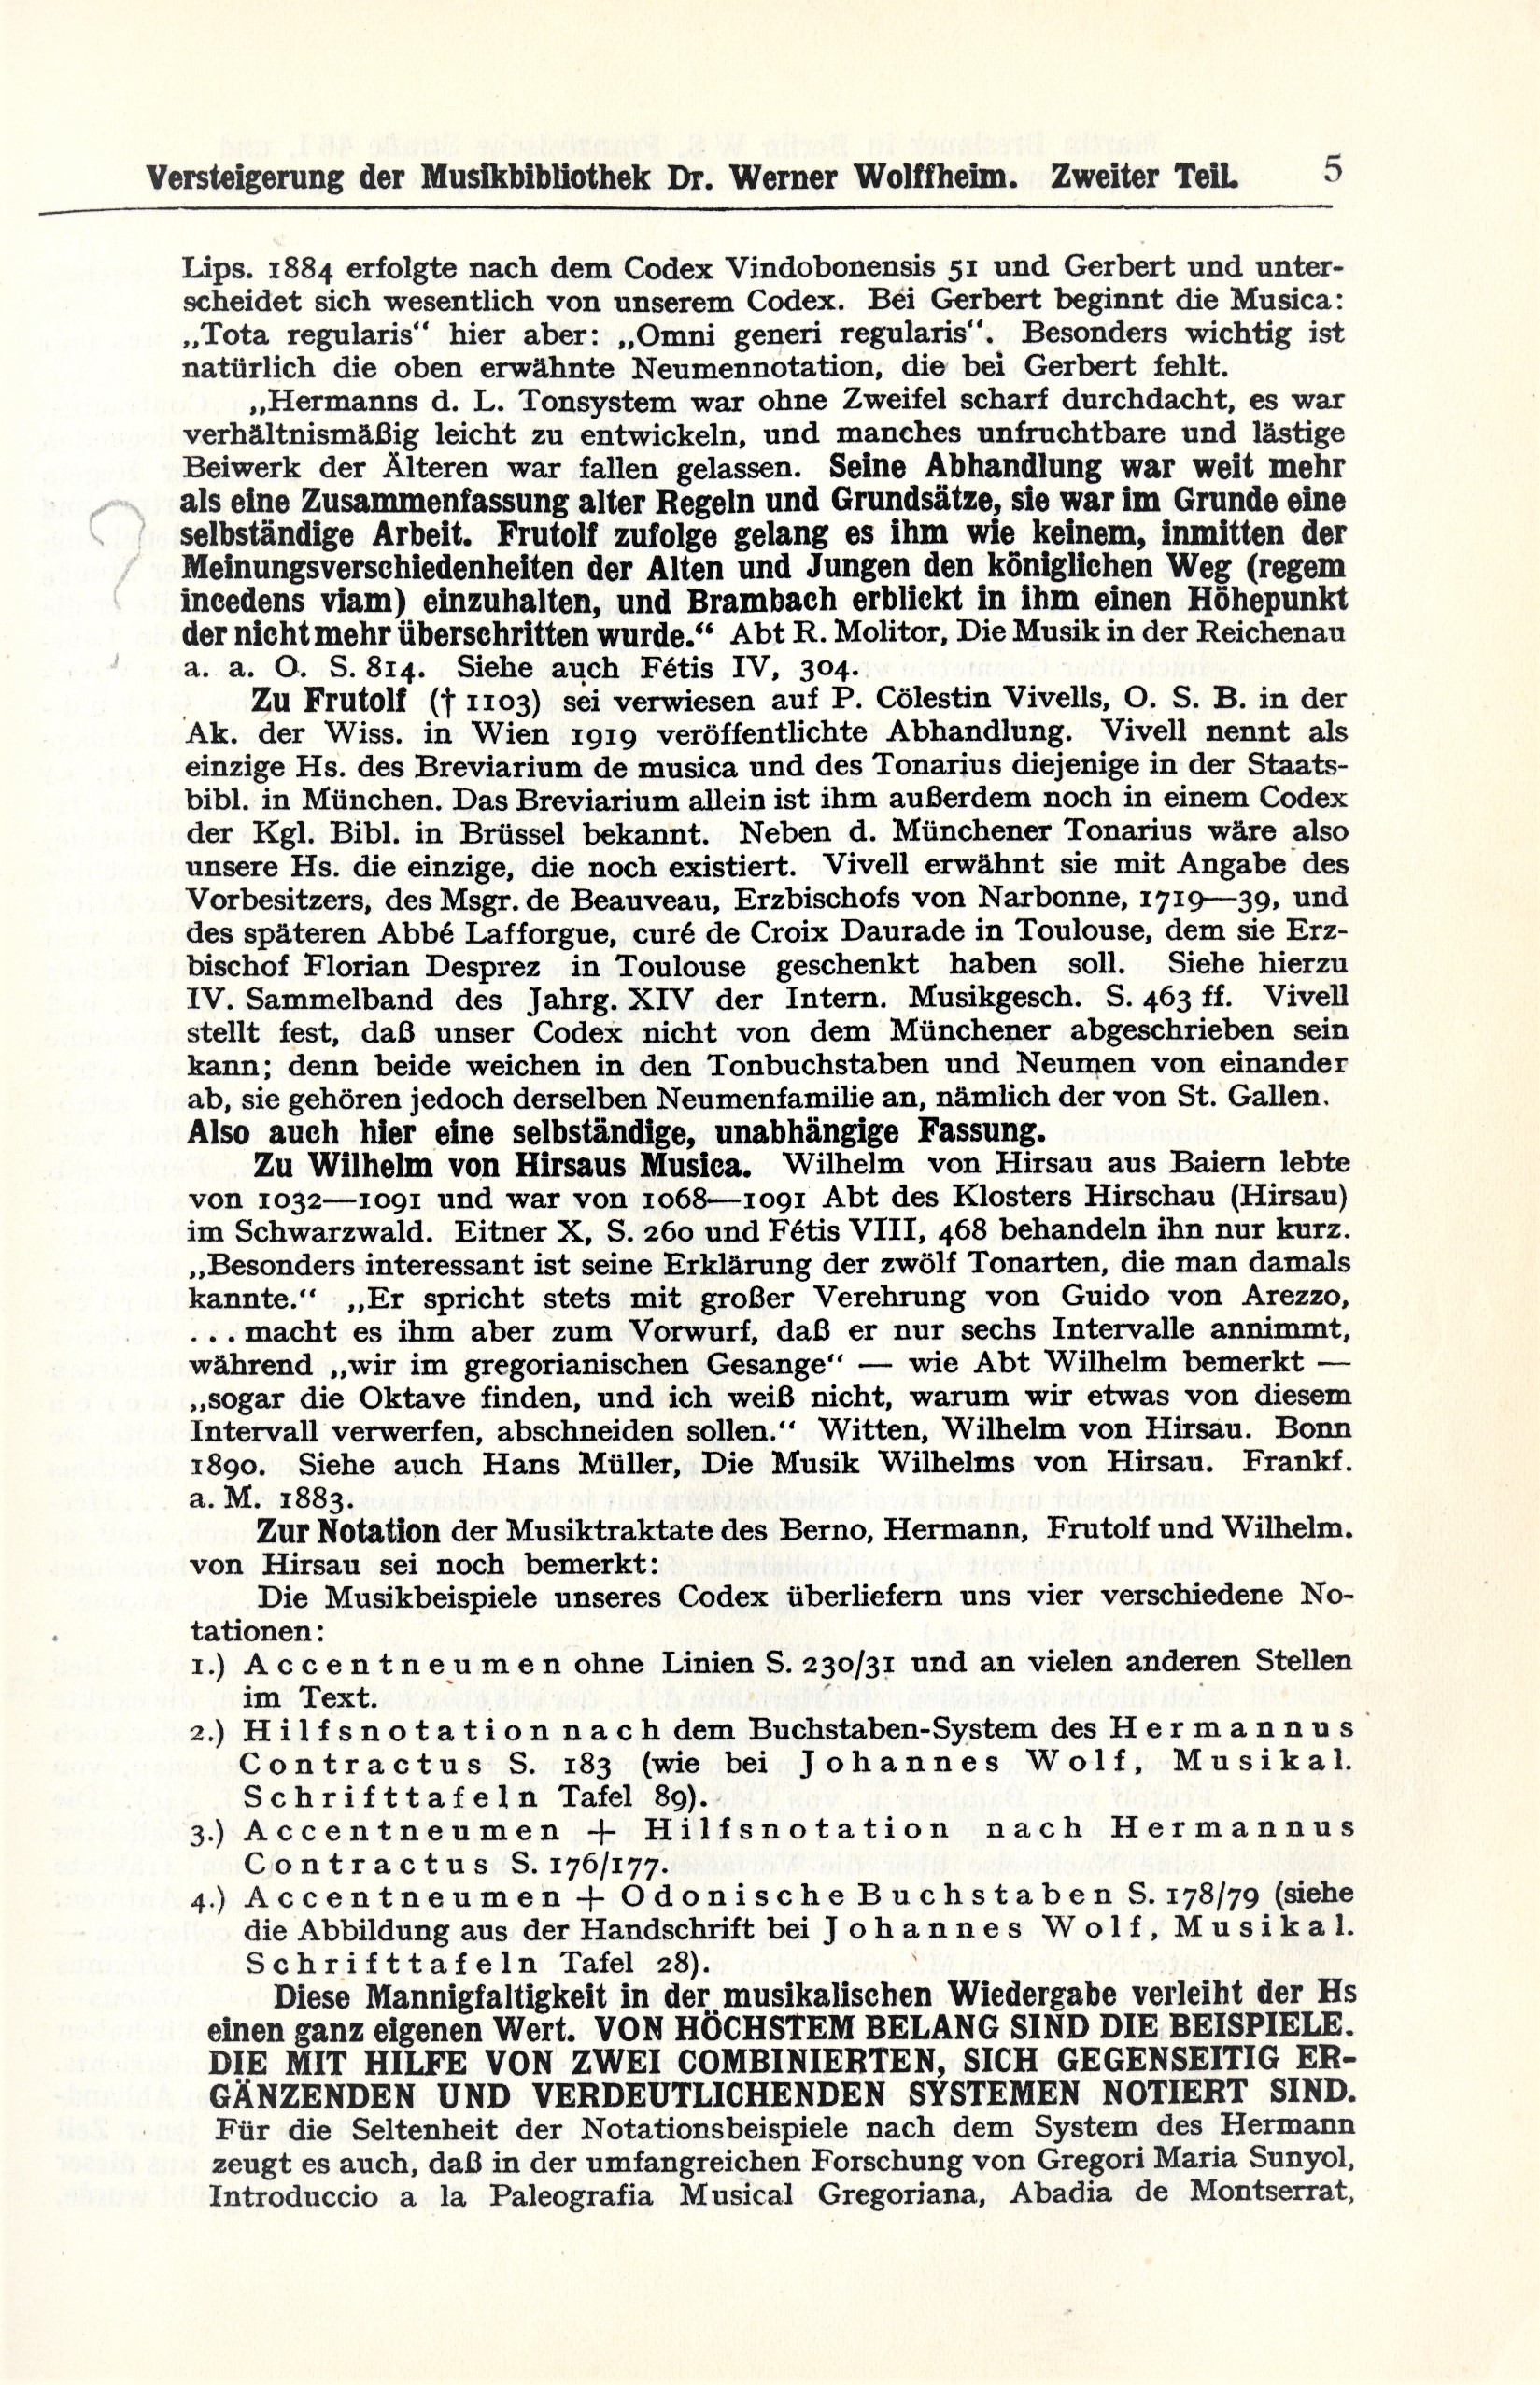 Wolffheim auction catalog vol 2, page 5